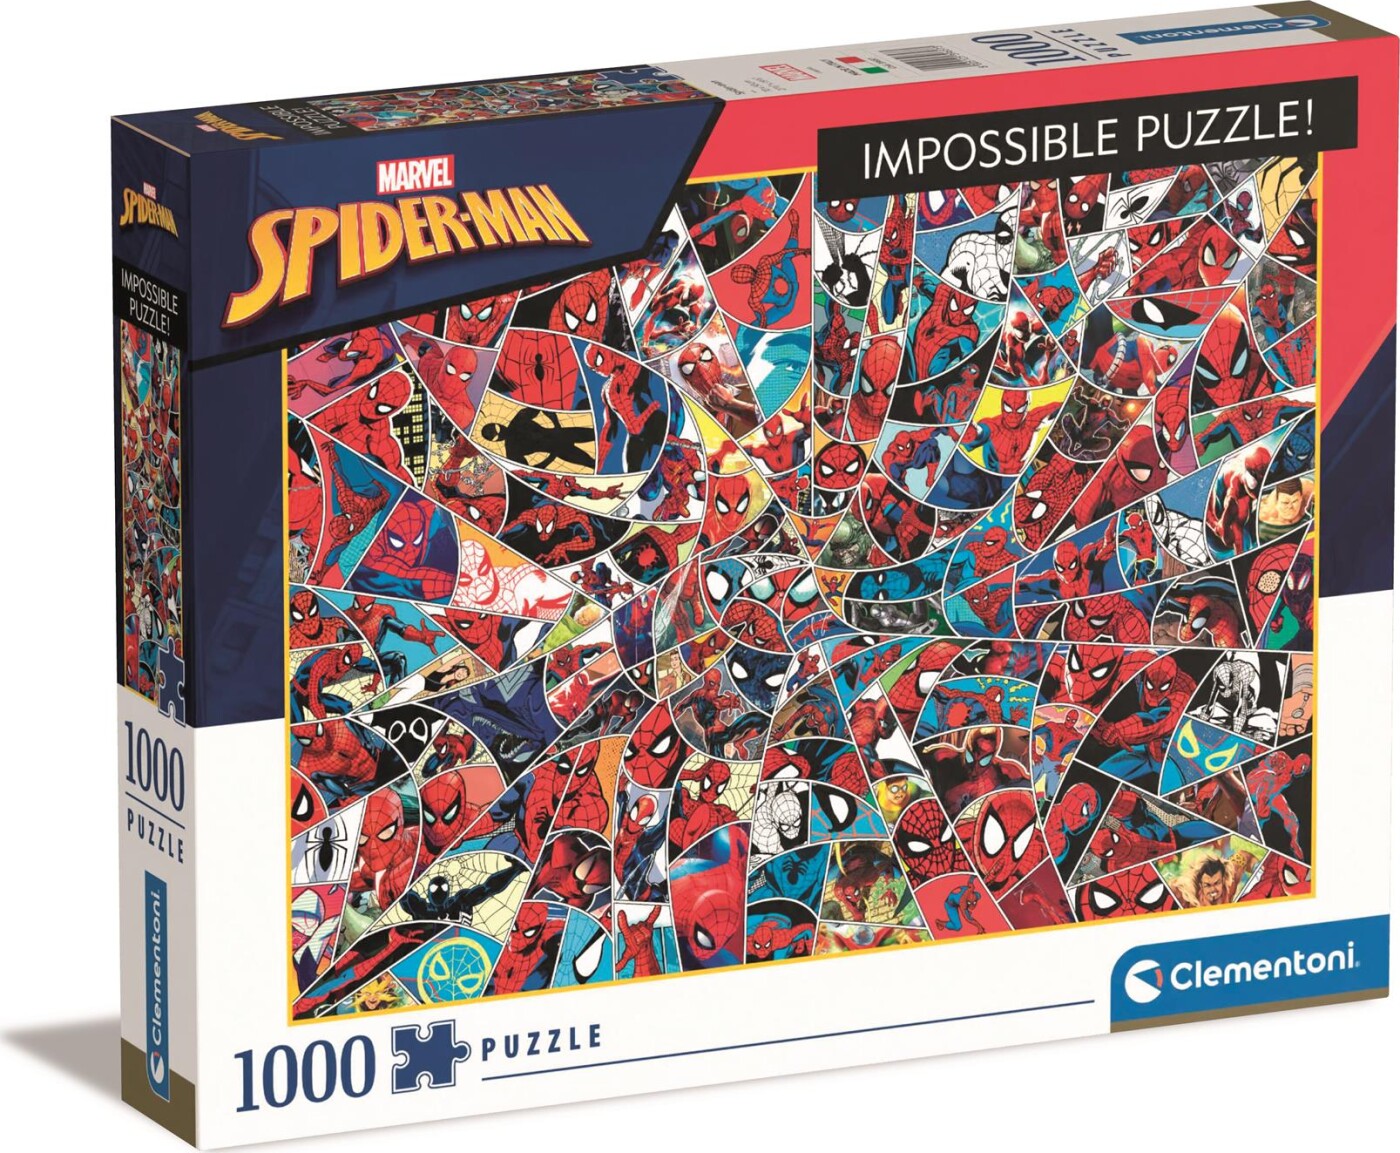 Spider-man Puslespil - Clementoni - 1000 Brikker - Impossible